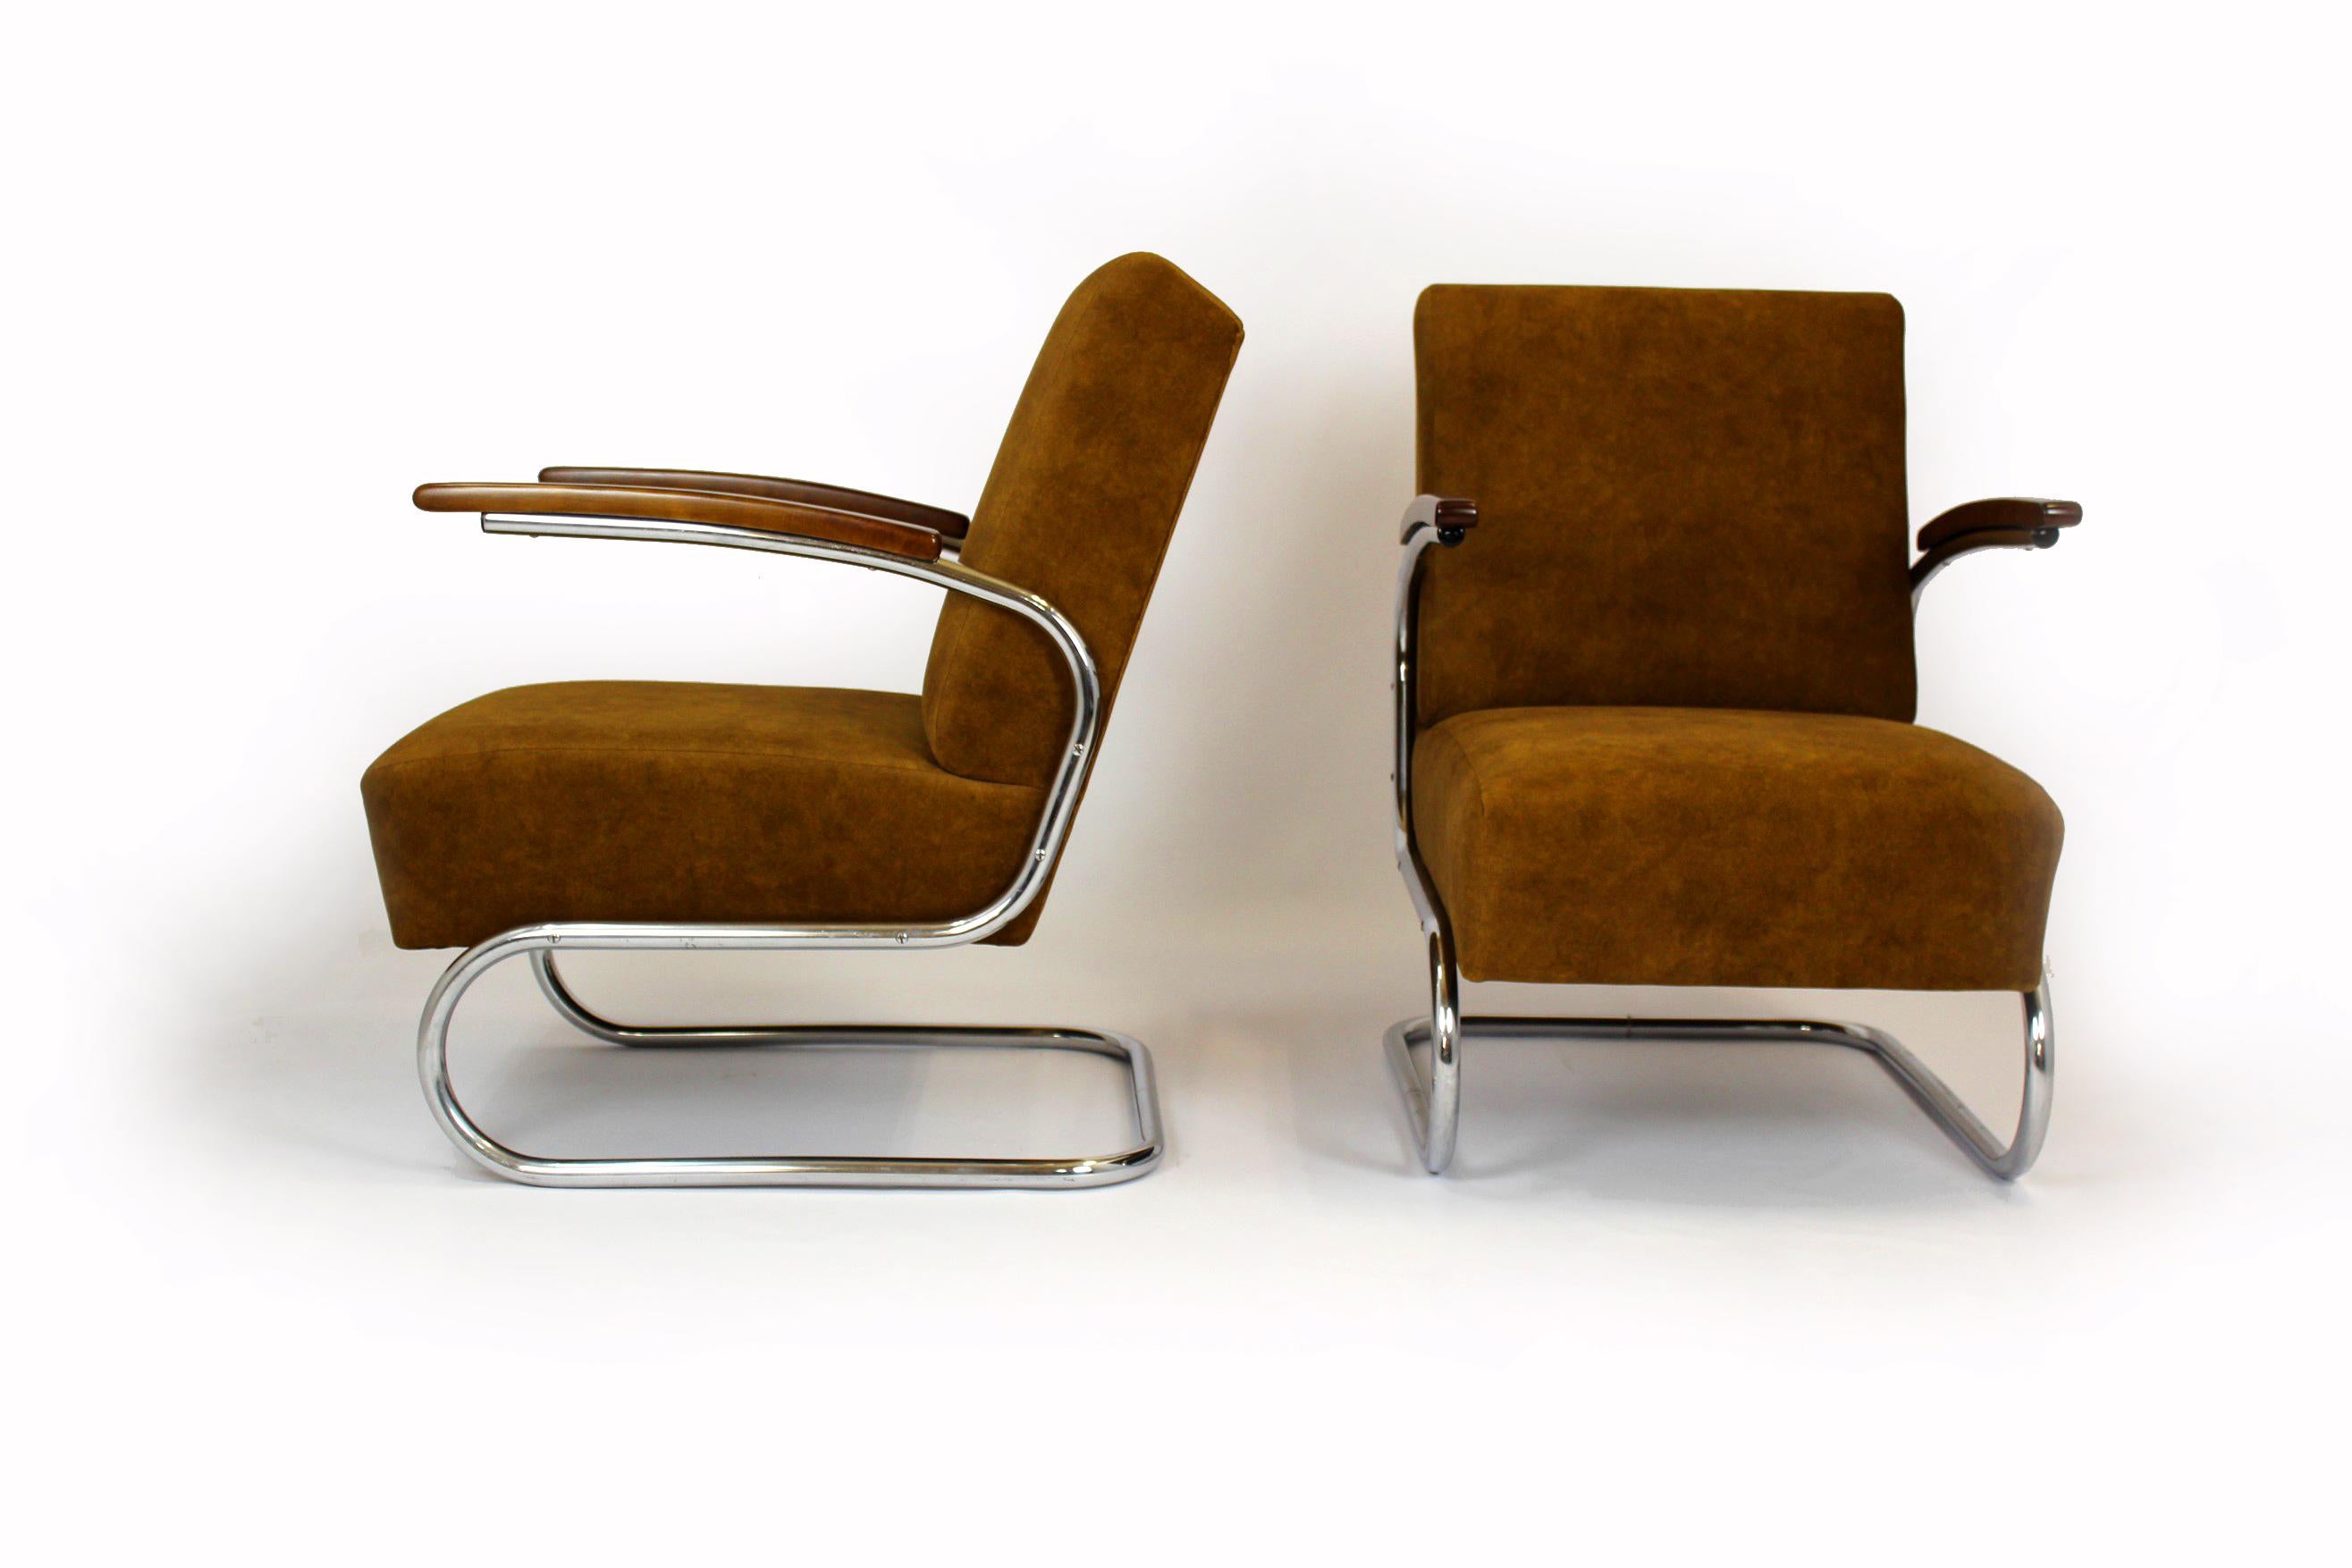 Ensemble de deux fauteuils cantilever S411 de style Bauhaus avec une structure en bois laqué et en tube d'acier chromé. Conçu dans les années 1930 par Willem Hendrik Gispen et fabriqué par Mücke Melder sous licence Thonet.
Les fauteuils ont été